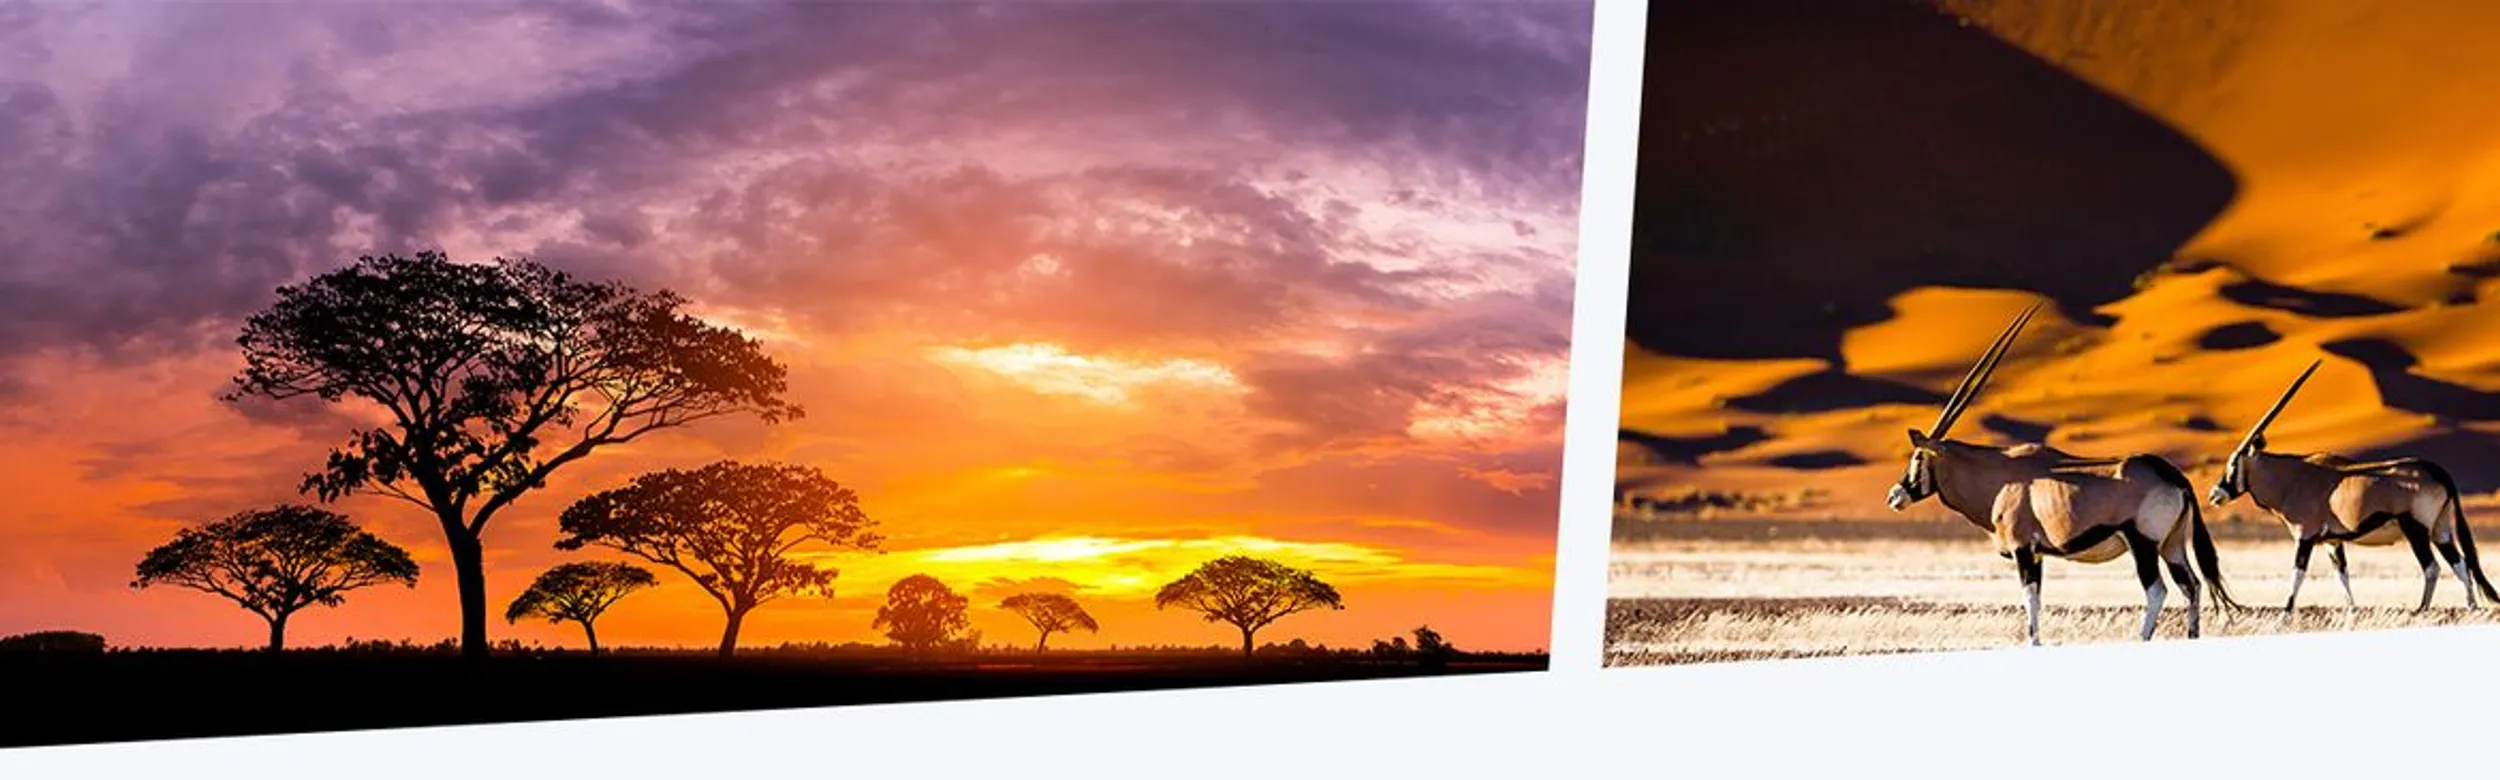 Savanne in Afrika bei Sonnenuntergang daneben ein Bild von zwei Gazellen